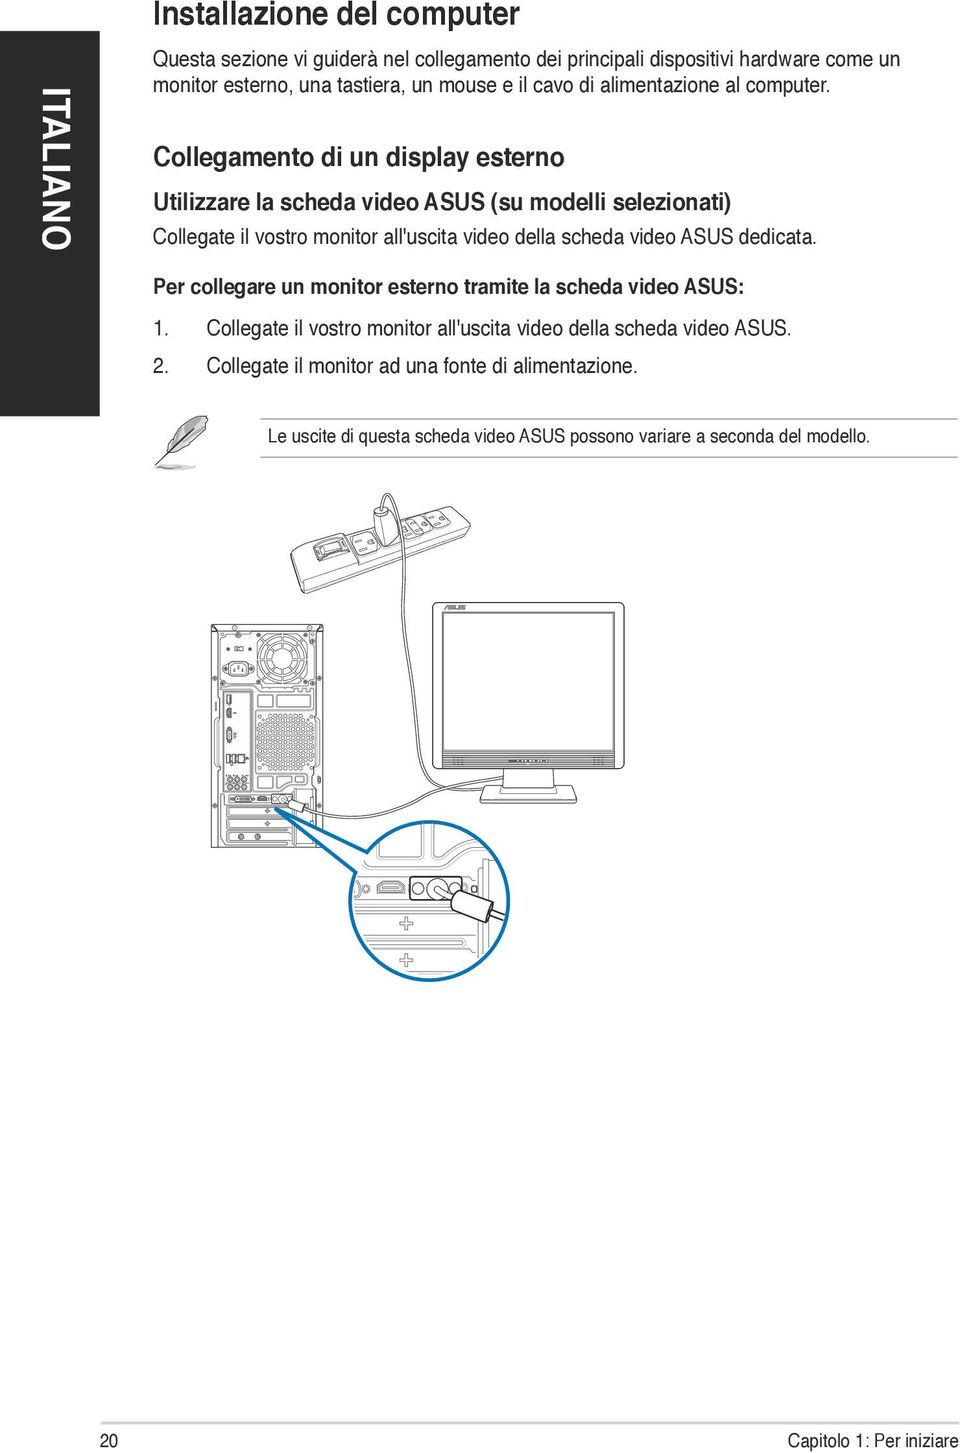 Collegamento di un display esterno Utilizzare la scheda video ASUS (su modelli selezionati) Collegate il vostro monitor all'uscita video della scheda video ASUS